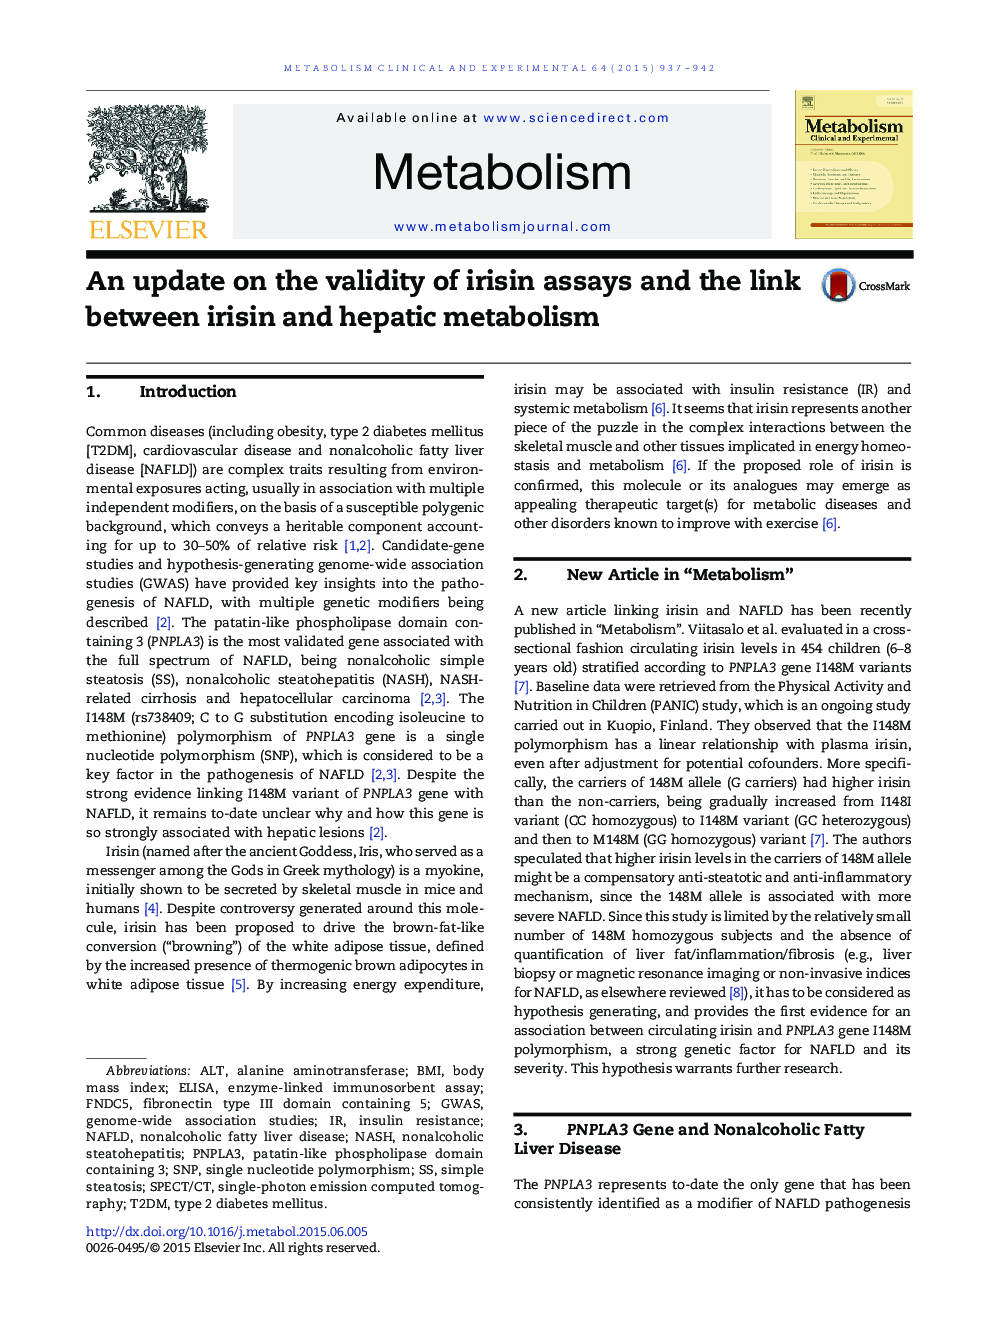 به روز رسانی در مورد اعتبار سنجش های ایریسین و ارتباط بین متابولیسم اریسین و کبد 